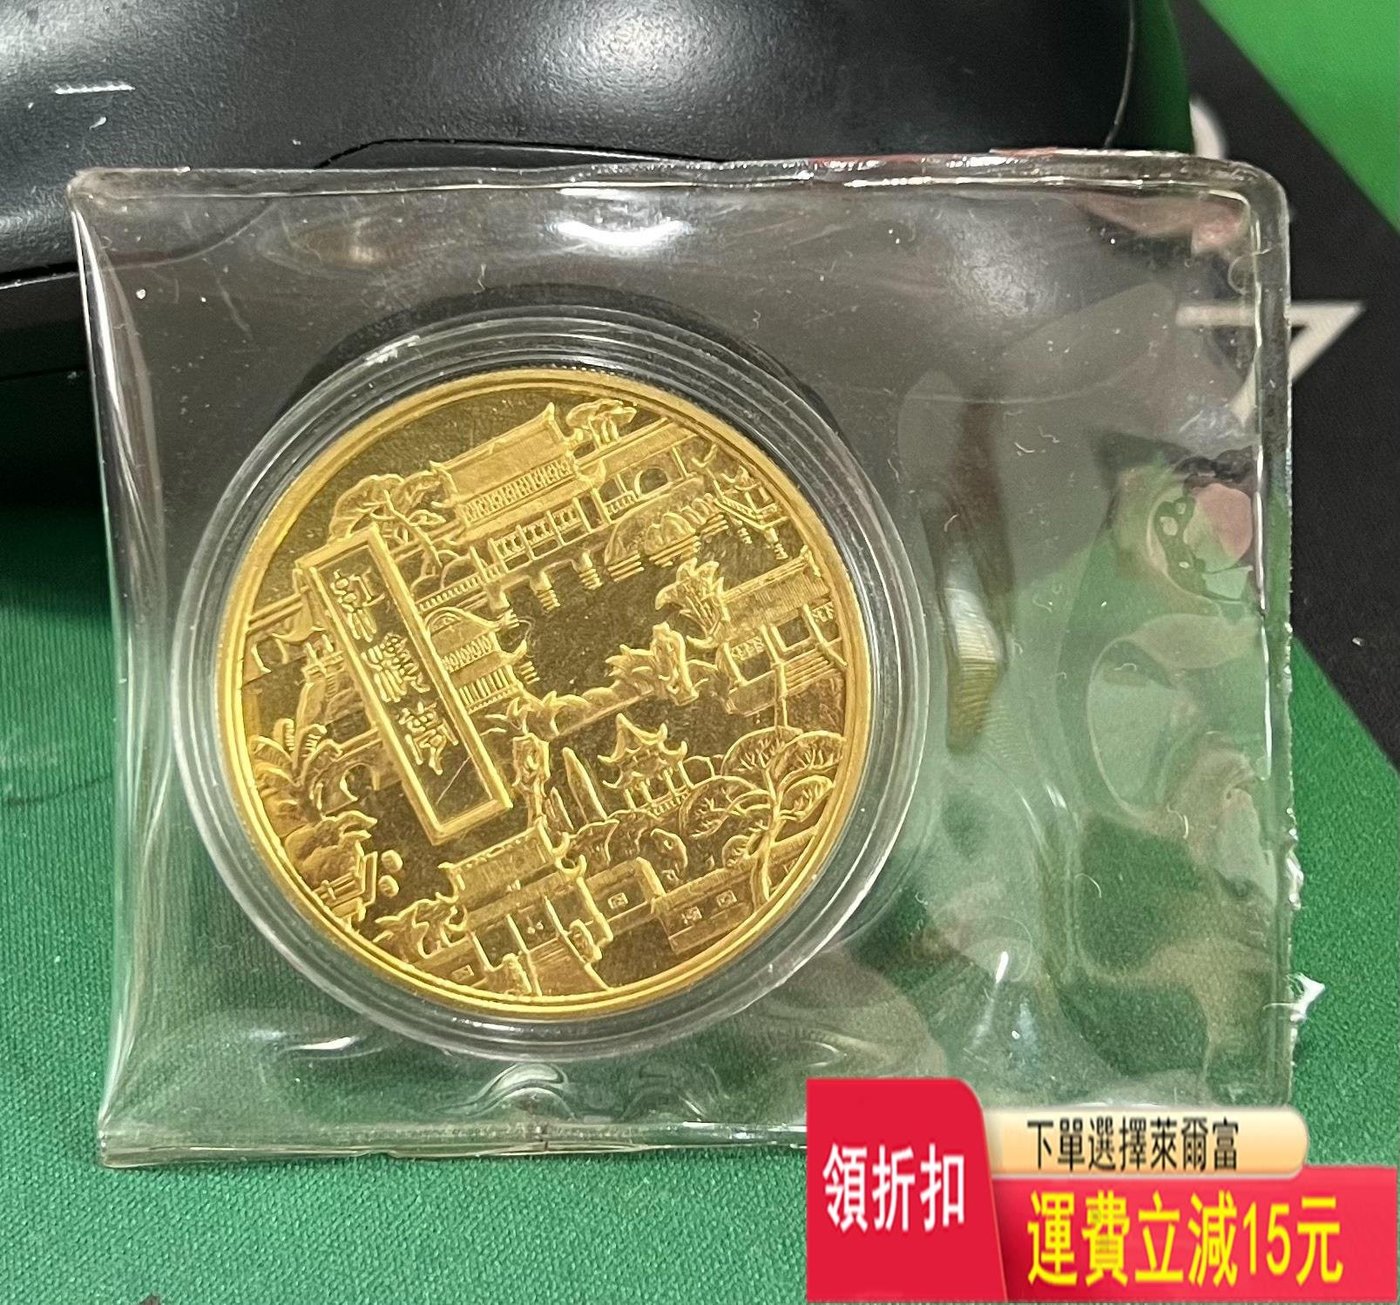 上海造幣廠1983年曹雪芹本銅精制紀念章小銅章，直徑36mm 可議價評級幣